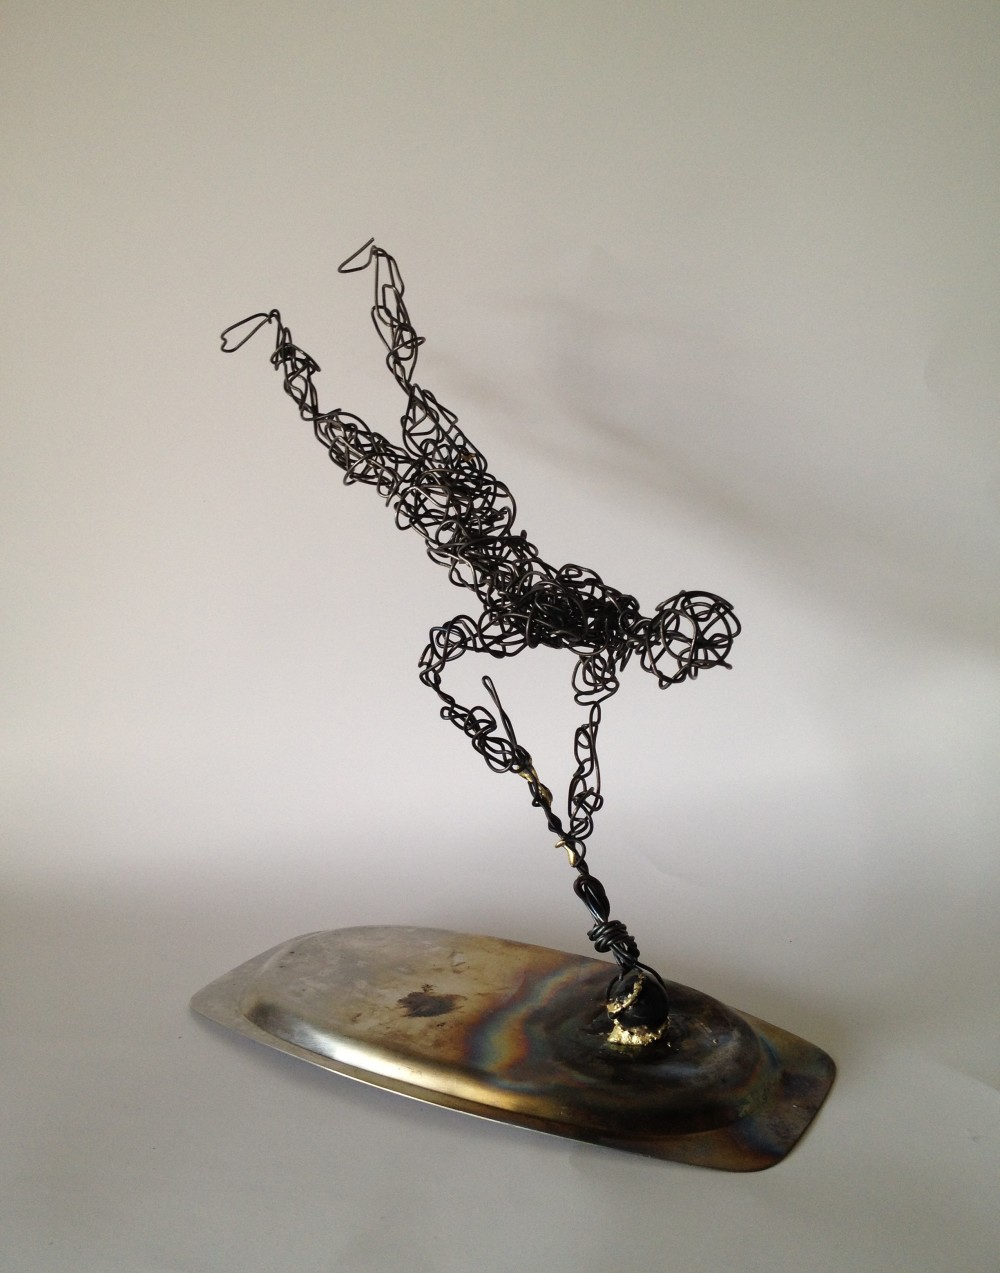 Wire Sculpture - Hand - Frank Marino Baker - Drip & Wire Art